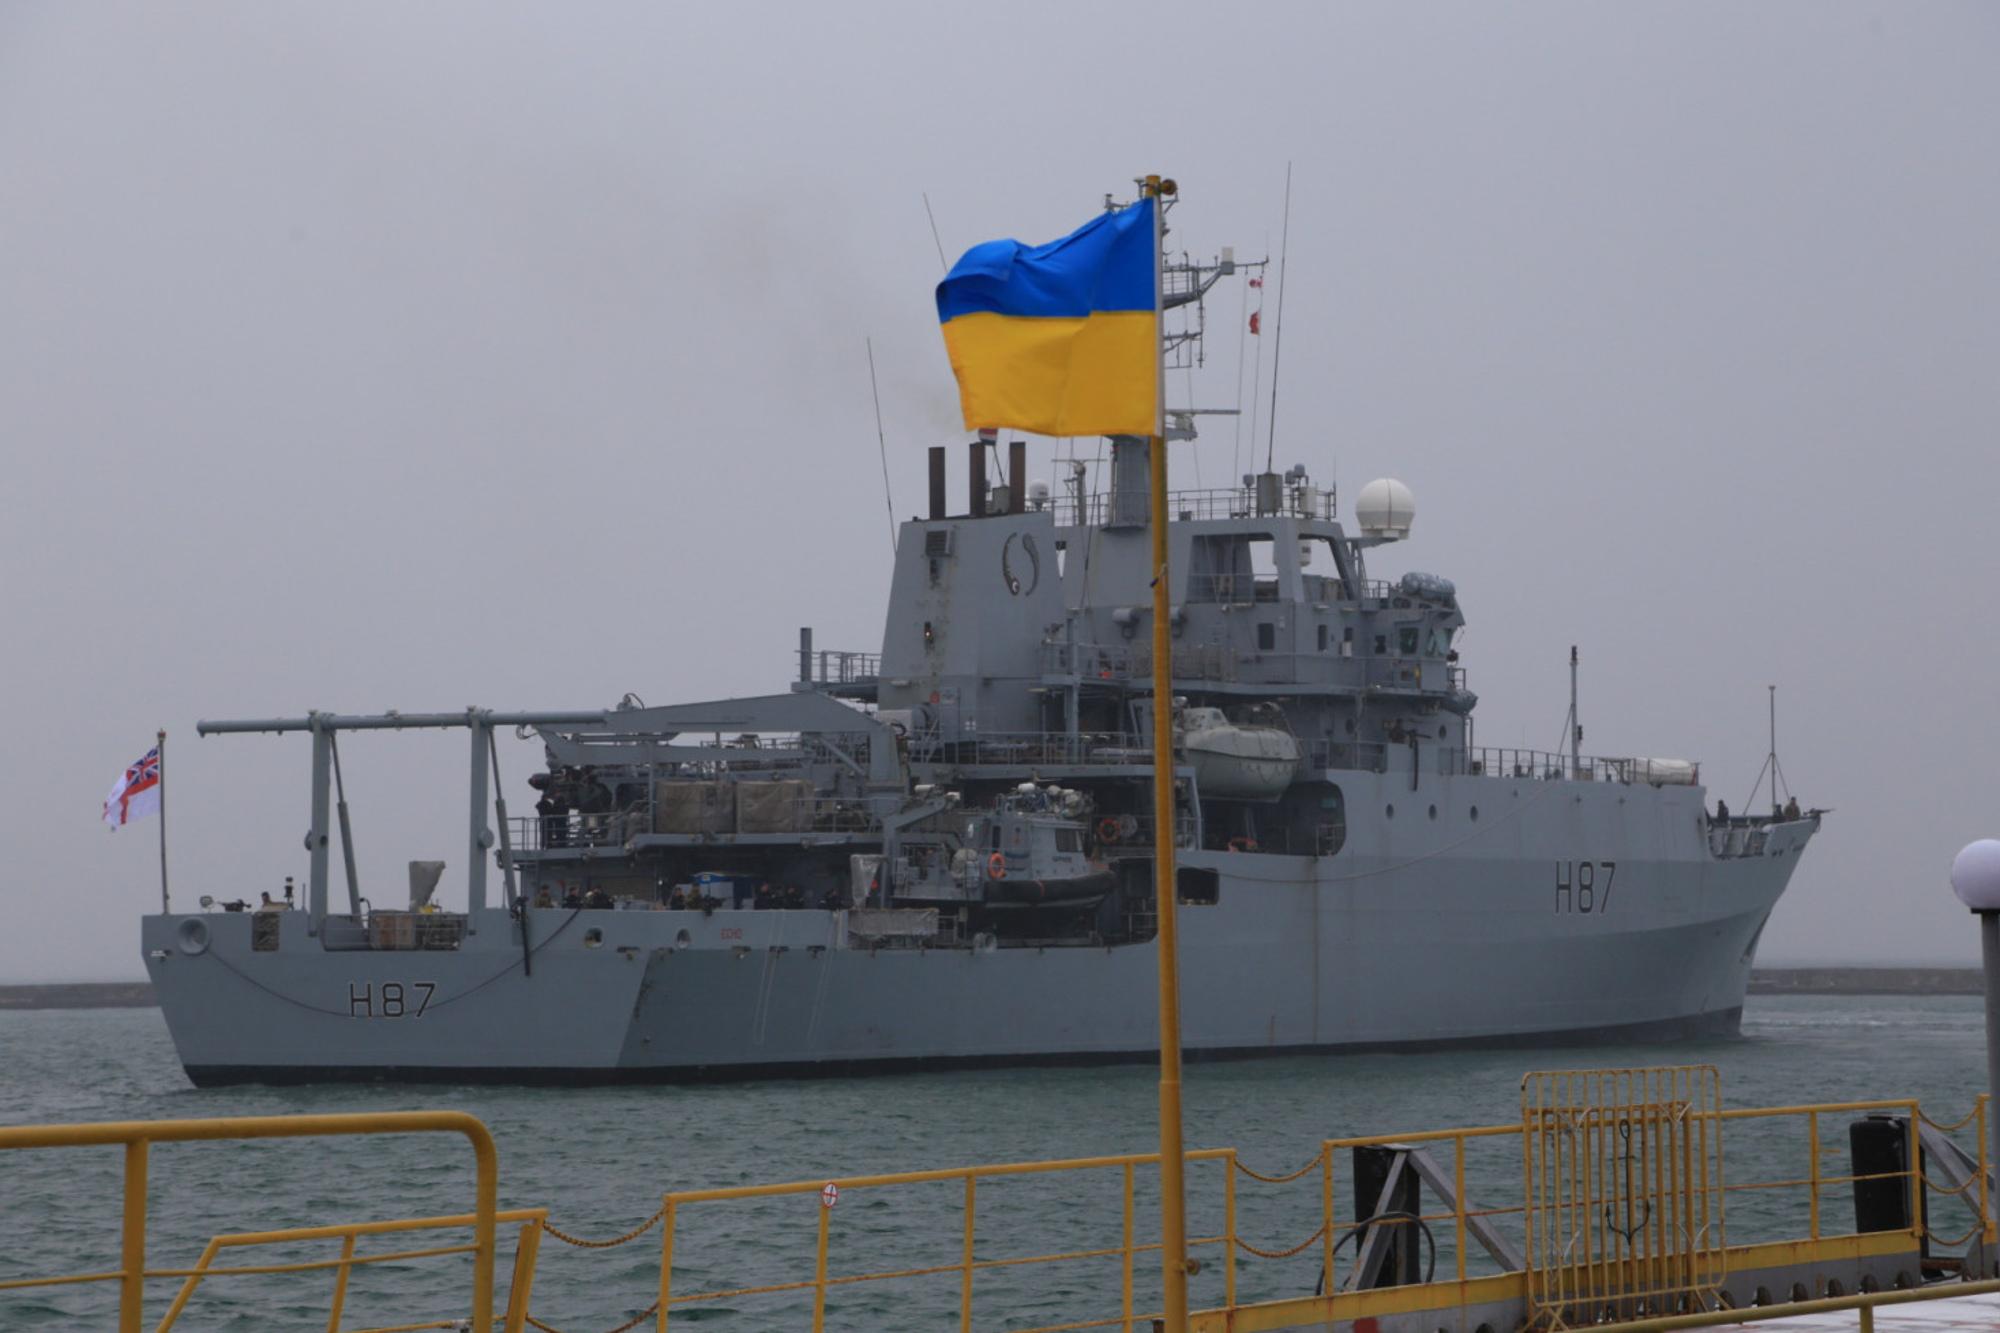 Появились фотографии, показывающие стыковку HMS Echo в Одессе сегодня перед тренировками в Черном море, где напряженность достигла предела после   Россия захватила три украинских военных корабля   ,